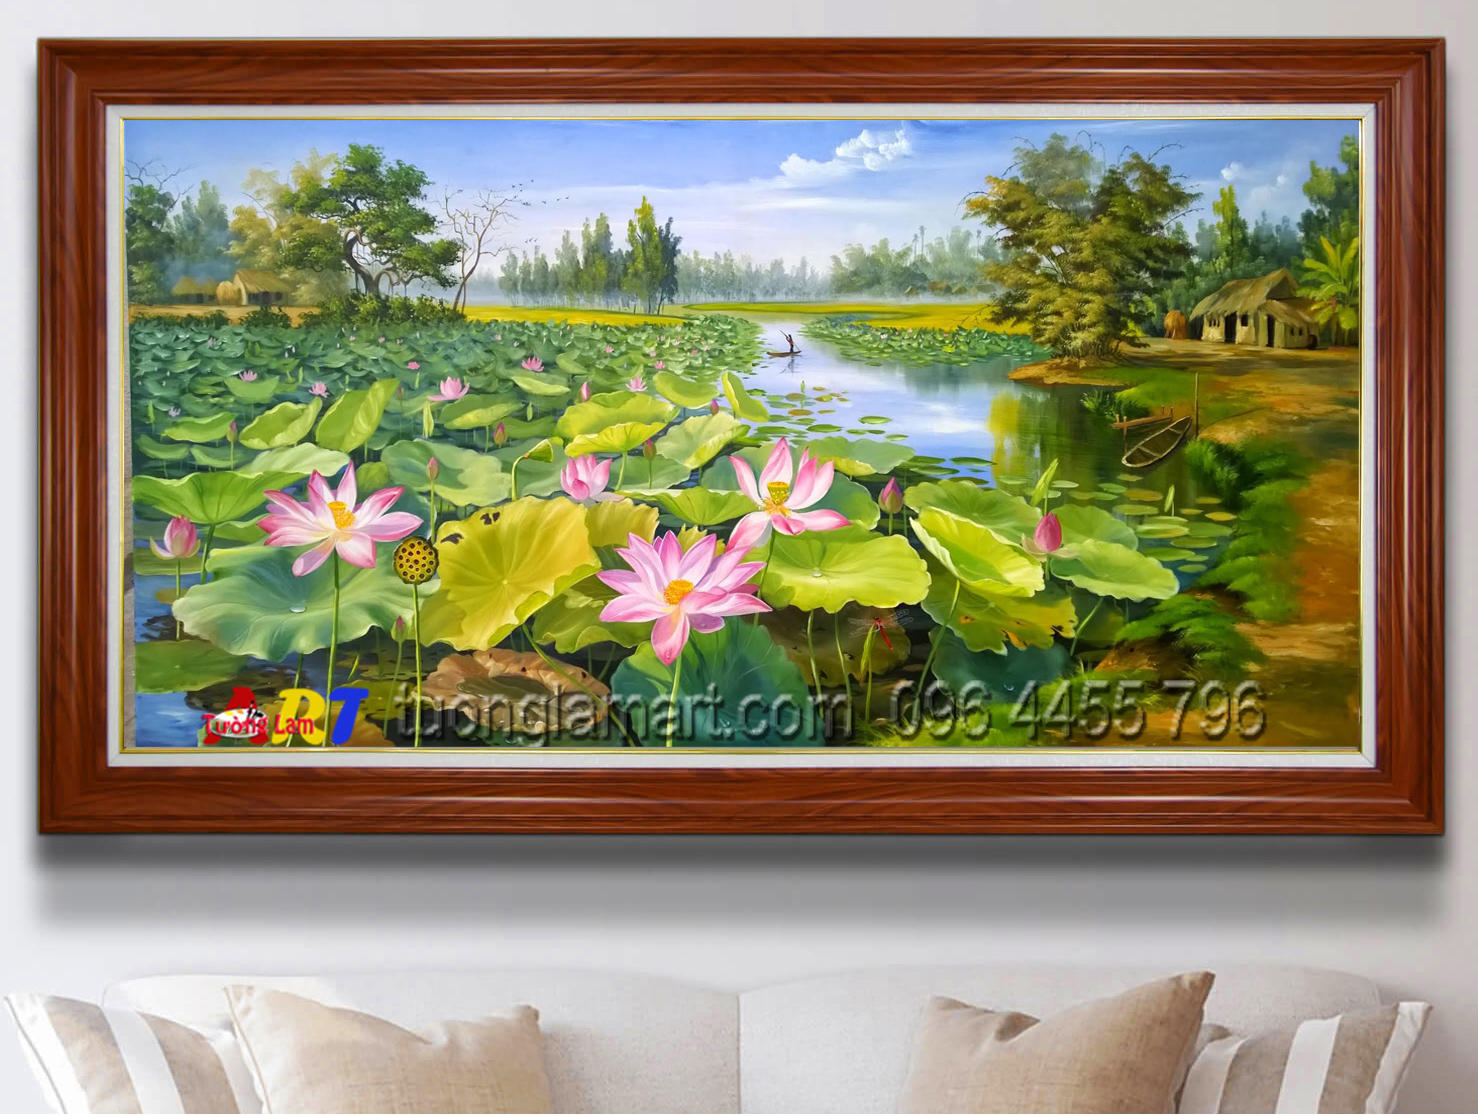 vẽ tranh đầm sen hoa sen - Tranh Sơn Dầu Vẽ Tay - Tranh Sơn Mài - Tường Lam  ART - 0964455796